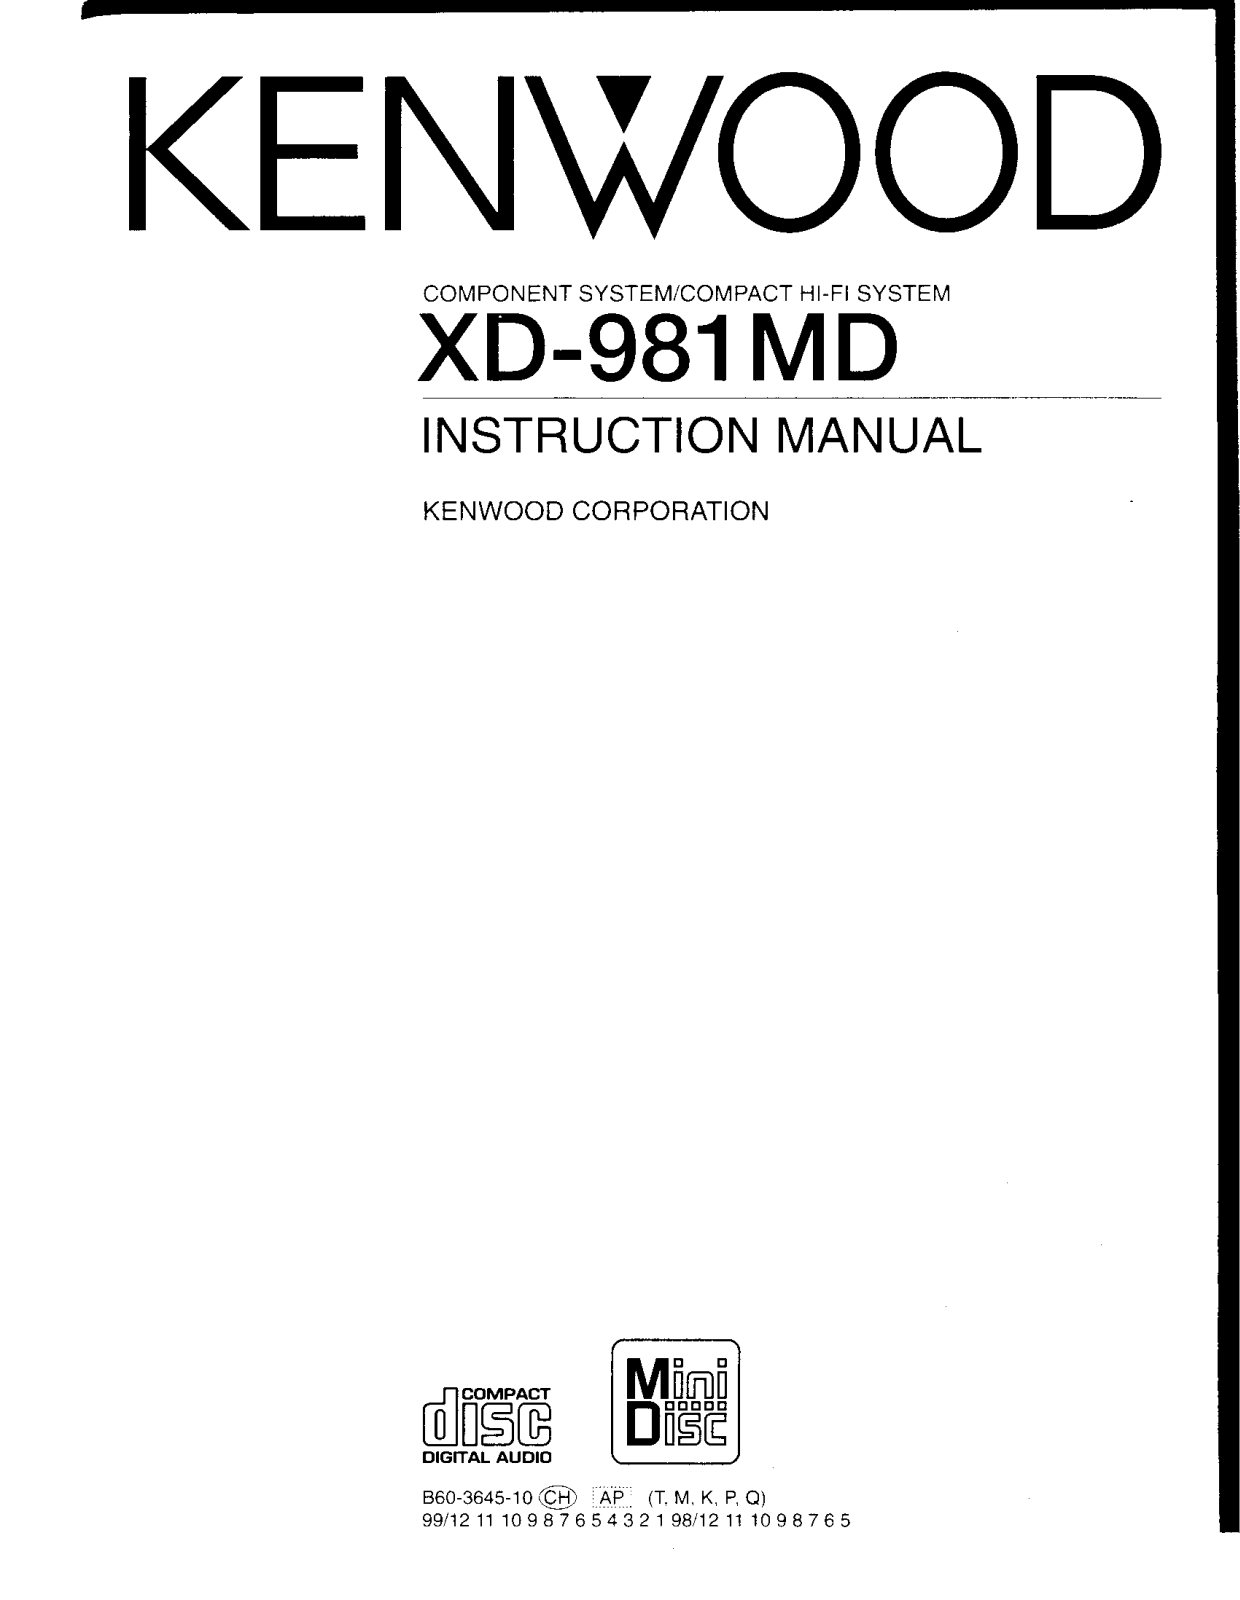 Kenwood LS-N651, LS-N951, RXD-981MD, XD-981MD Owner's Manual